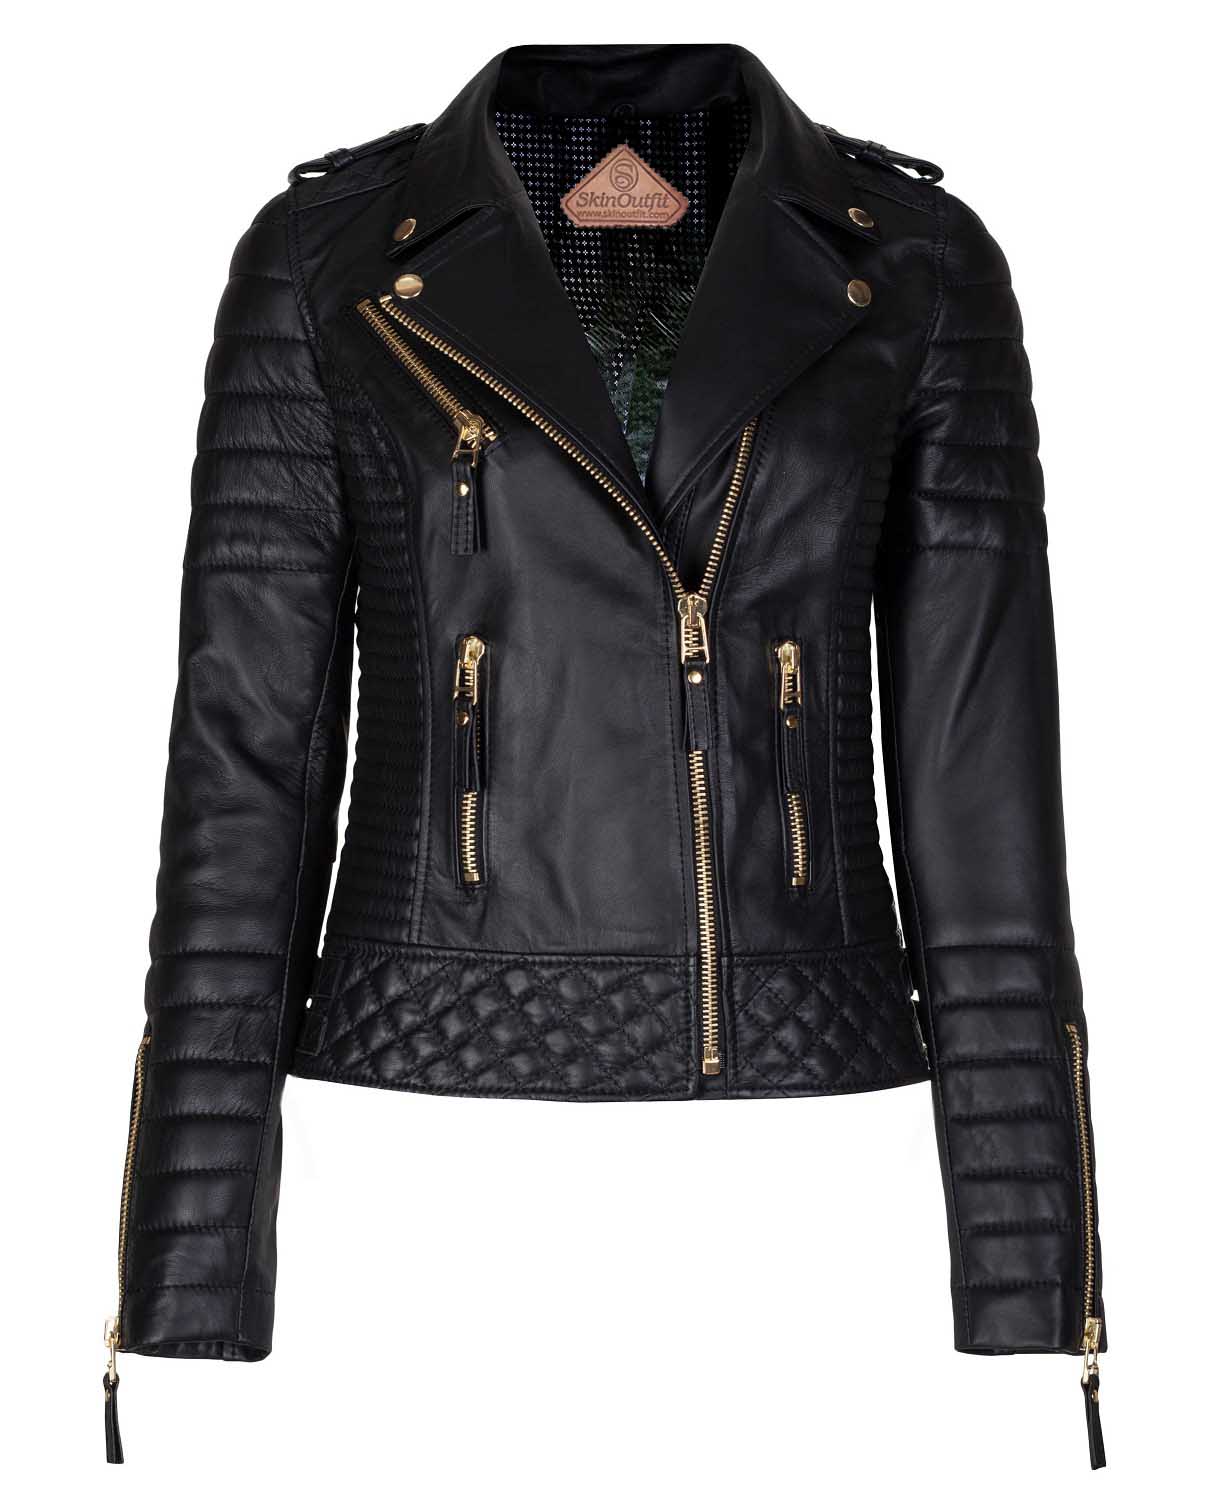 Women's Biker Leather Jacket Black Gold Zipper – SkinOutfit